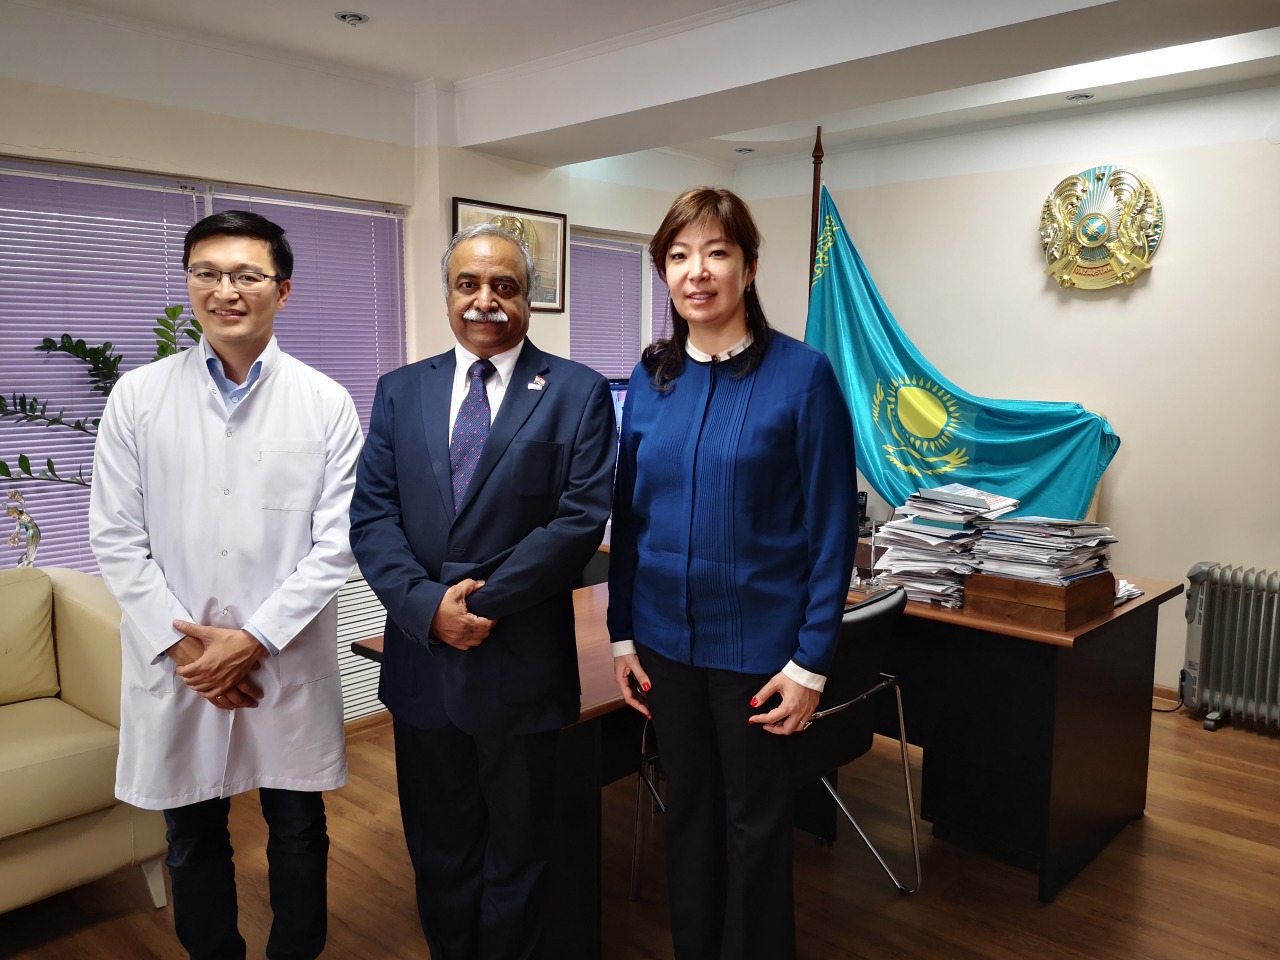 КазНИИОиР посетил профессор Динеш Пендхаркар из Ассоциации клинических онкологов США